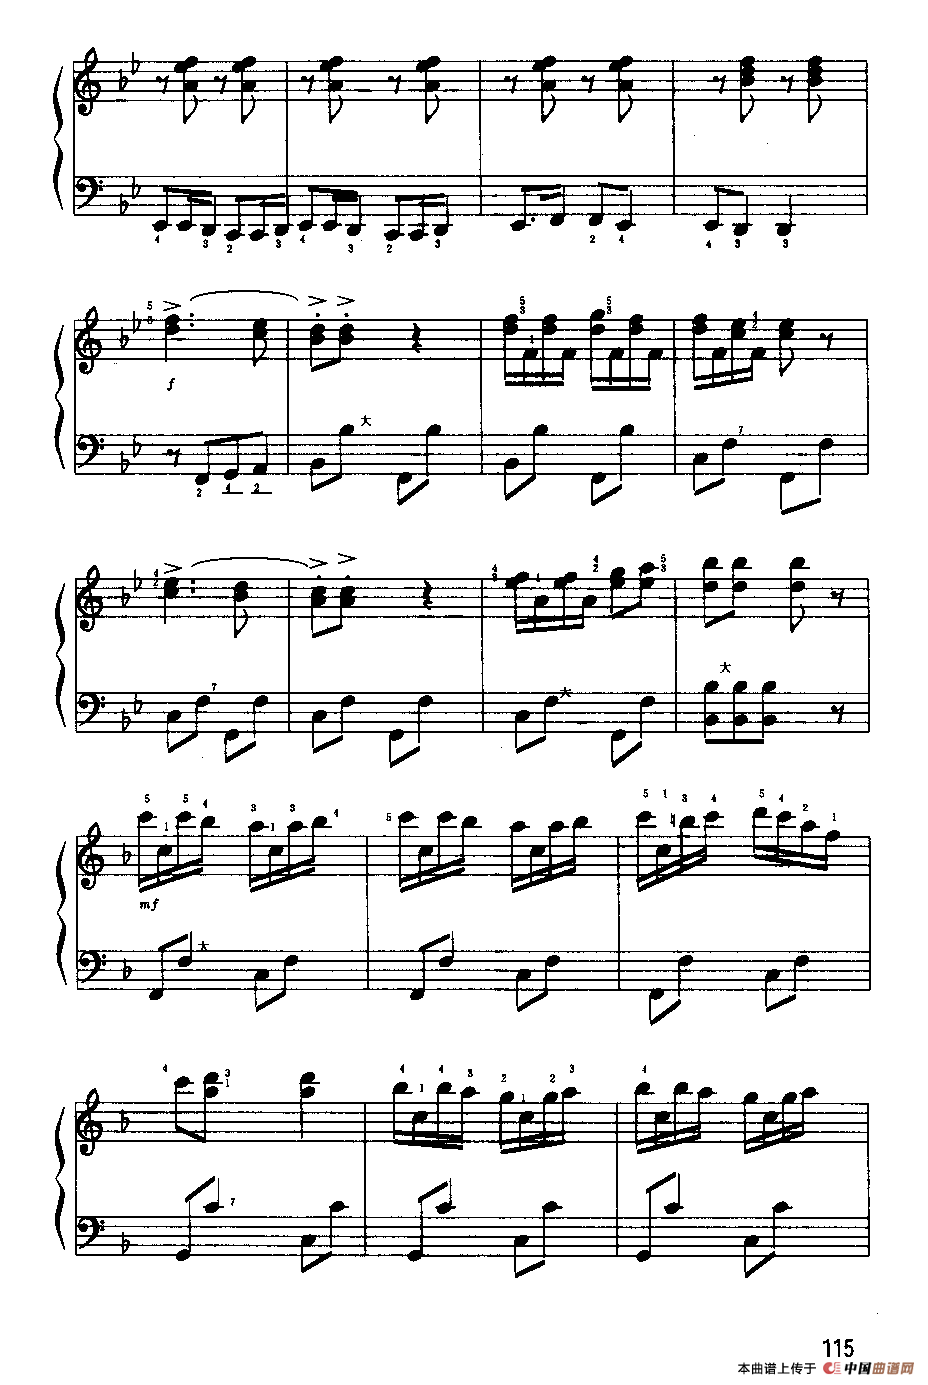 波尔卡曲谱_单簧管波尔卡曲谱(3)